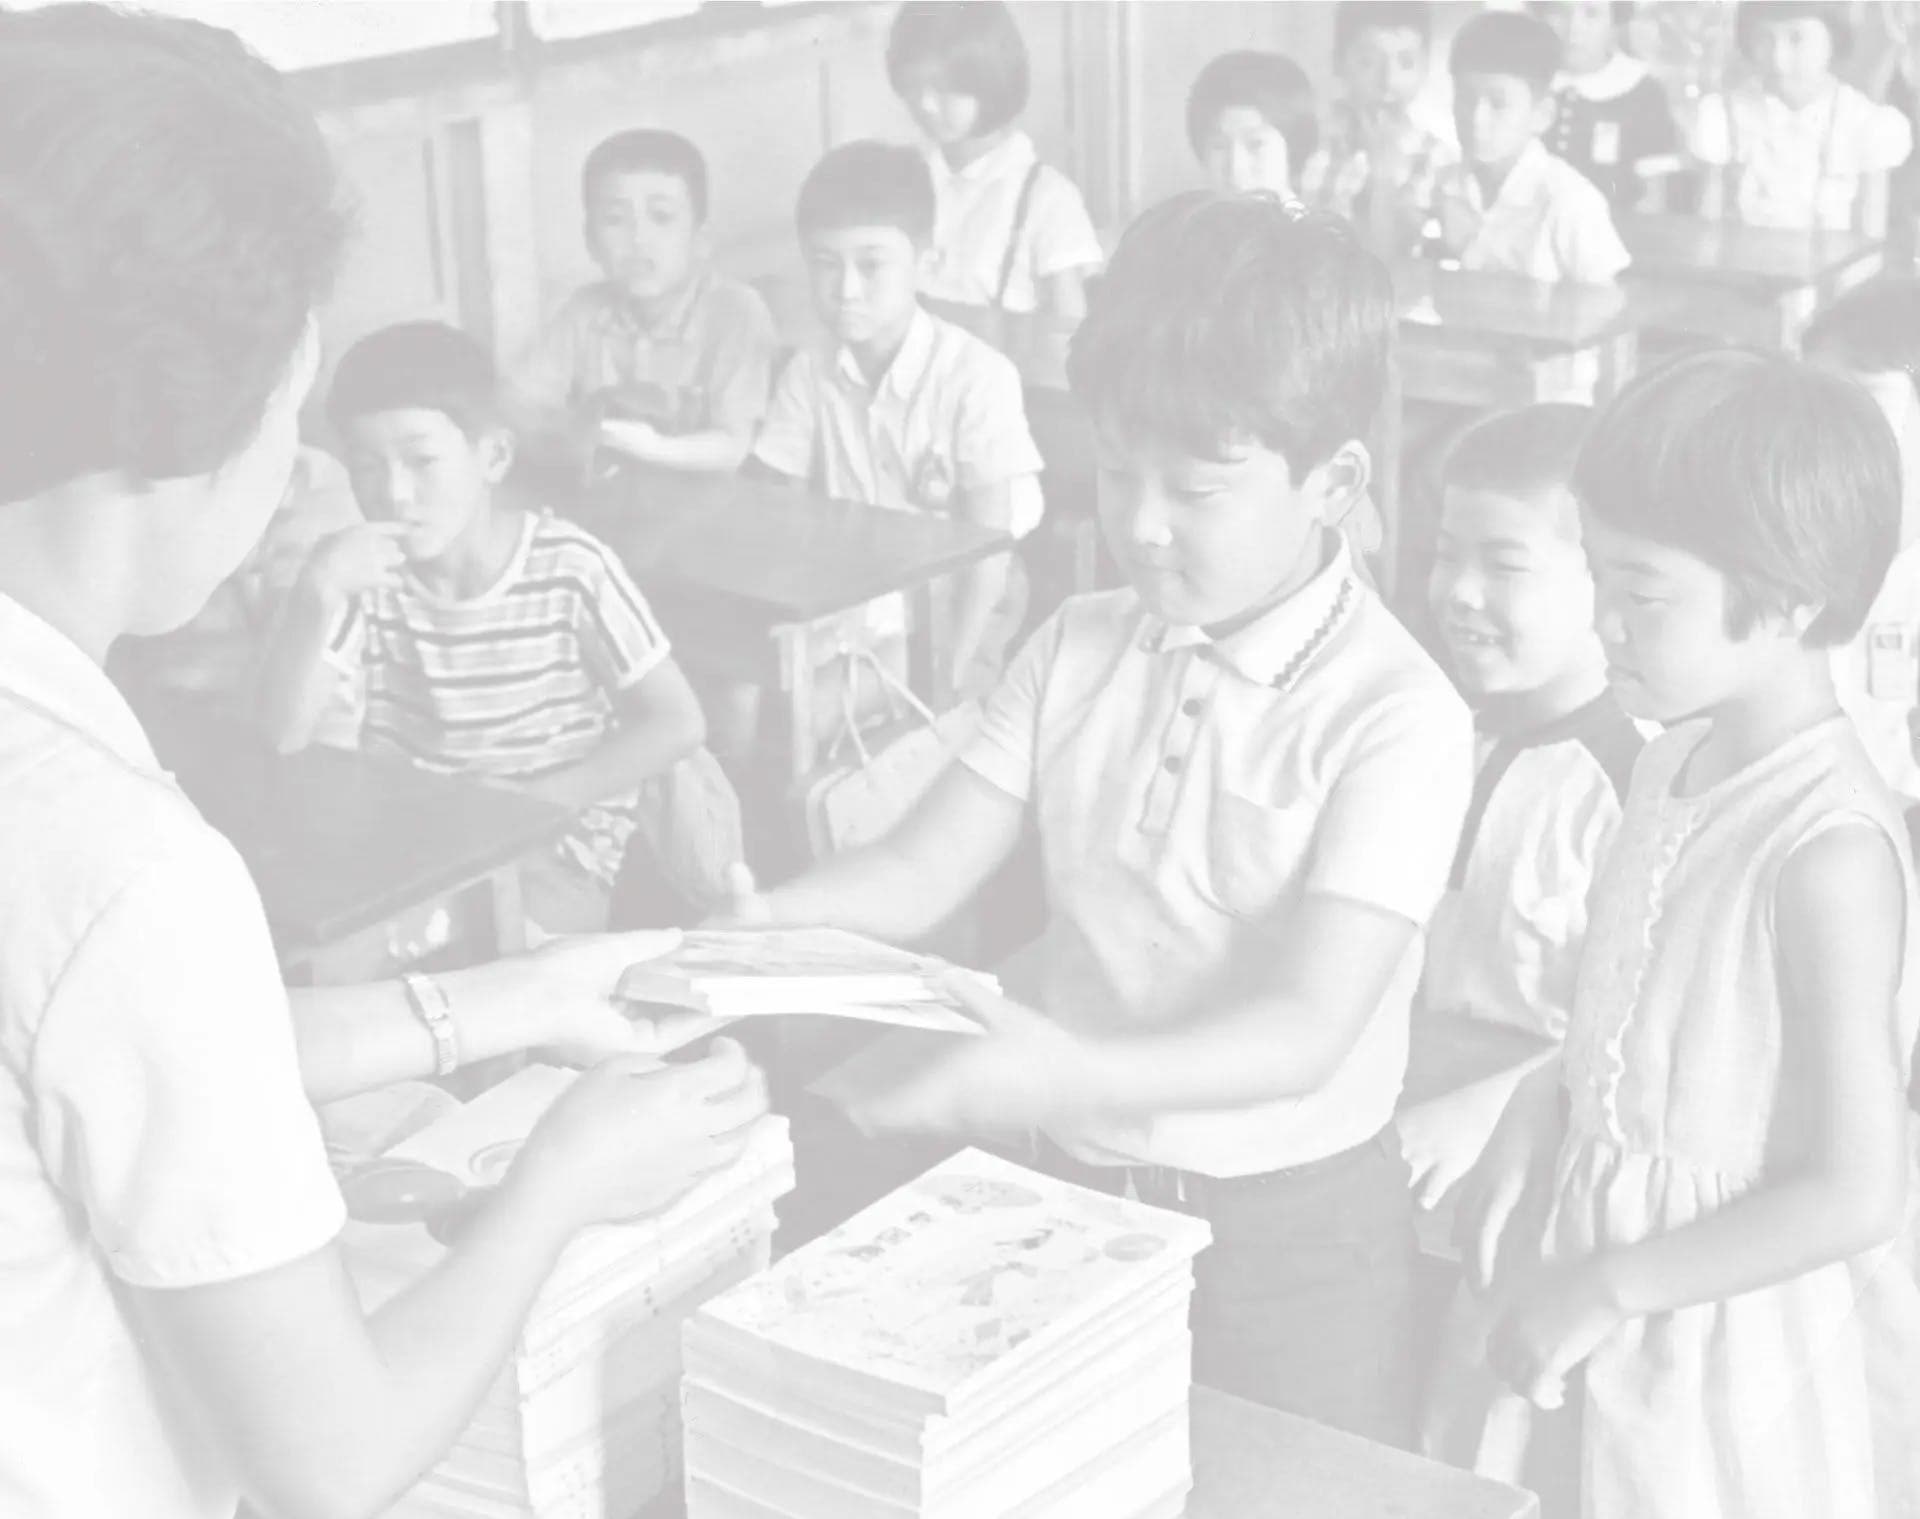 無償化になった教科書を受け取る小学校の児童たち＝１９６７年９月　千葉・船橋市